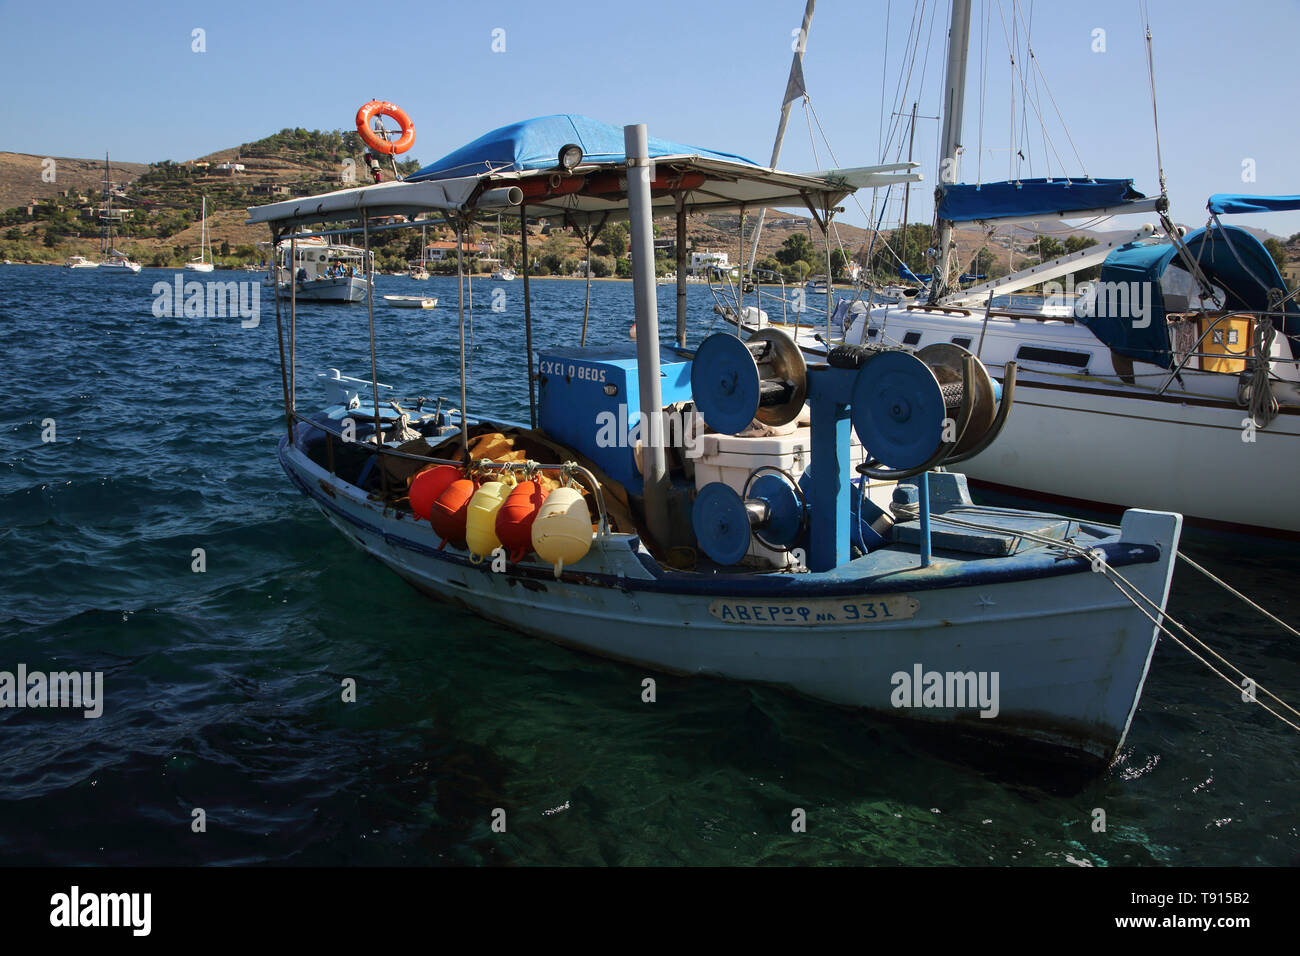 L'île de Kea Vourkari Grèce Bateau de pêche Banque D'Images